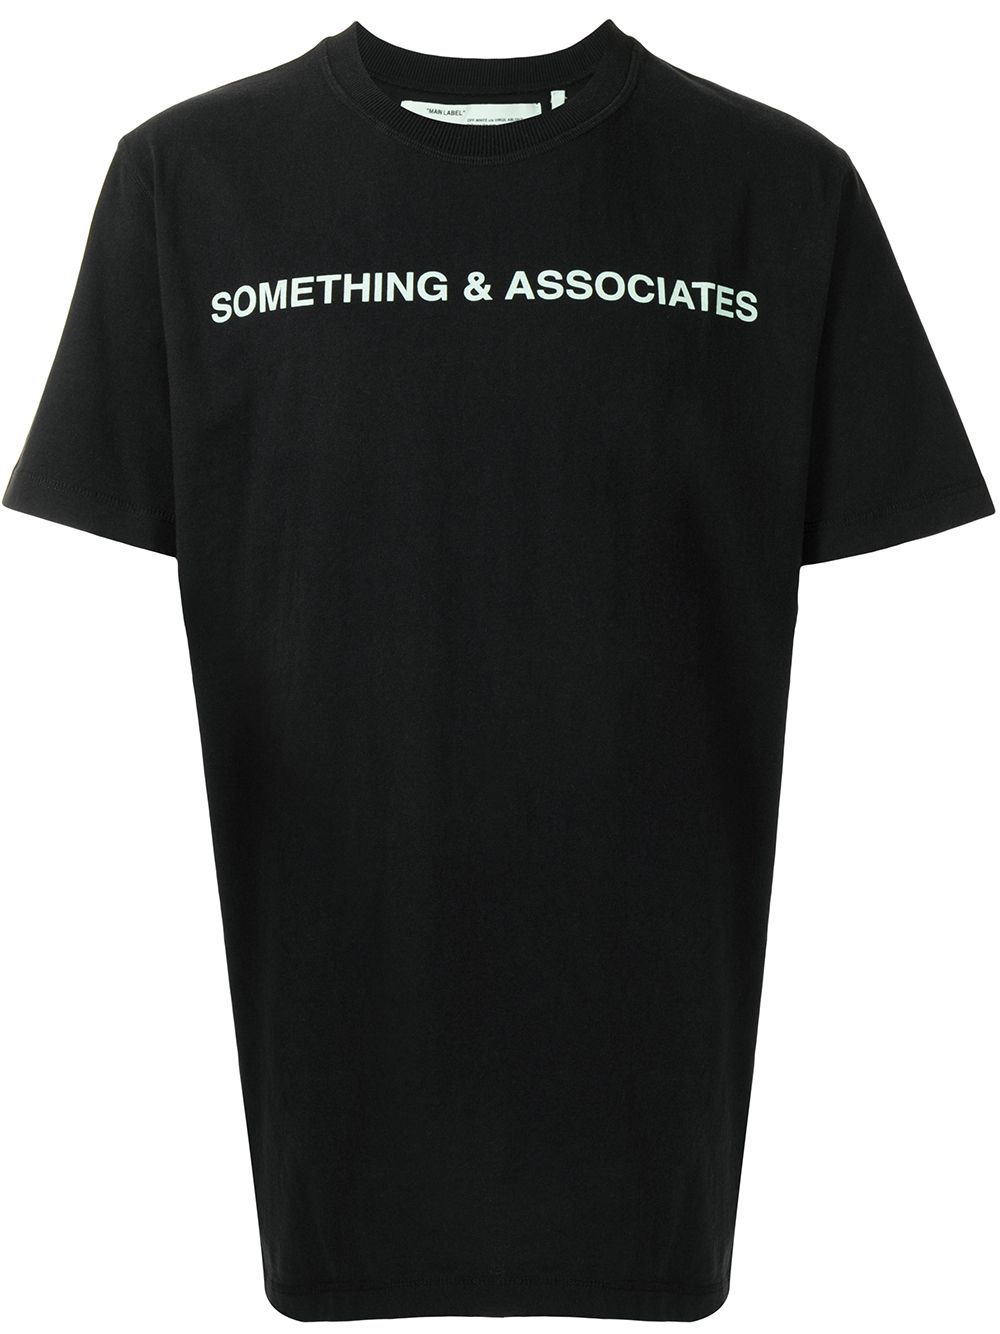 Off-White Something & Associates T-shirt - Farfetch